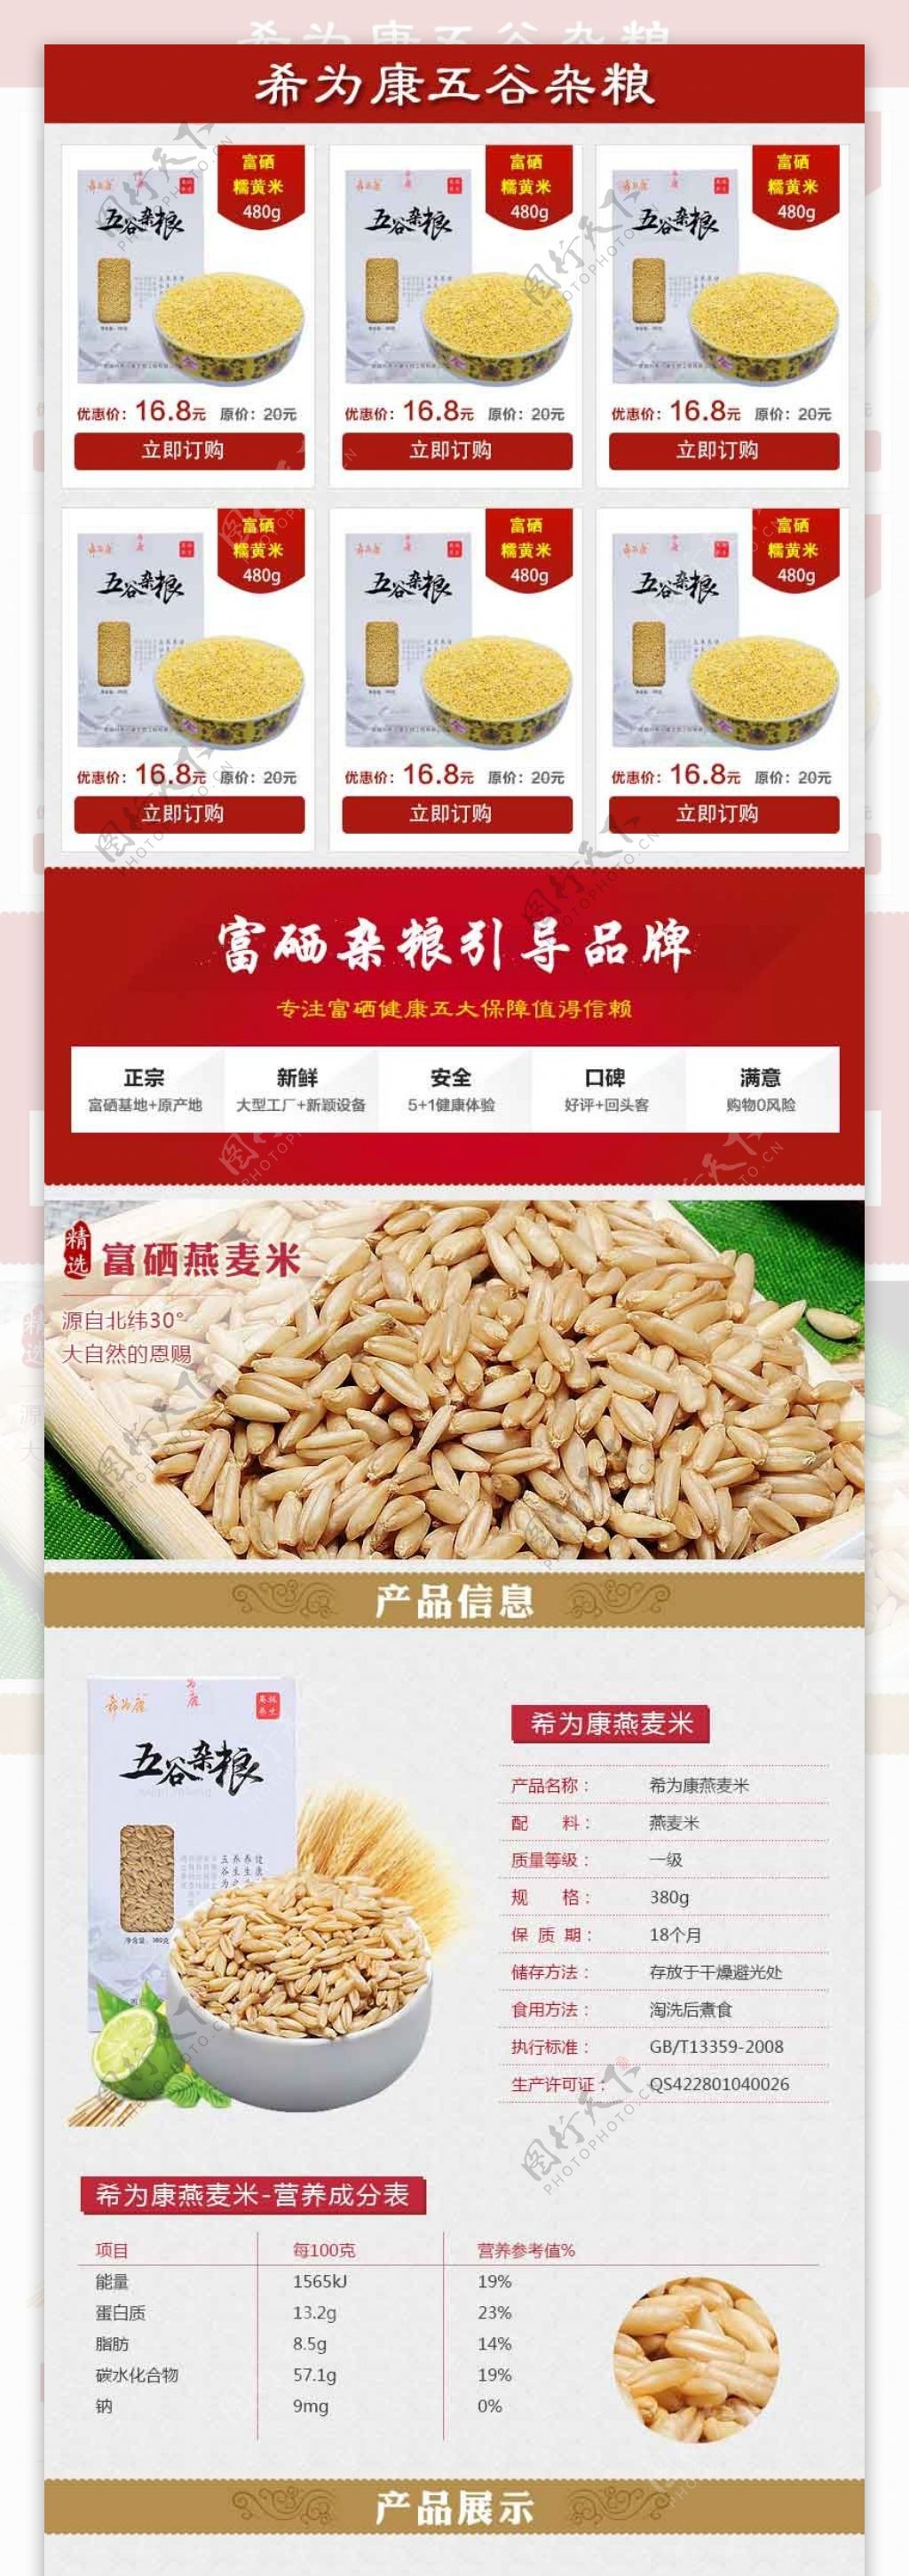 燕麦米淘宝详情页设计